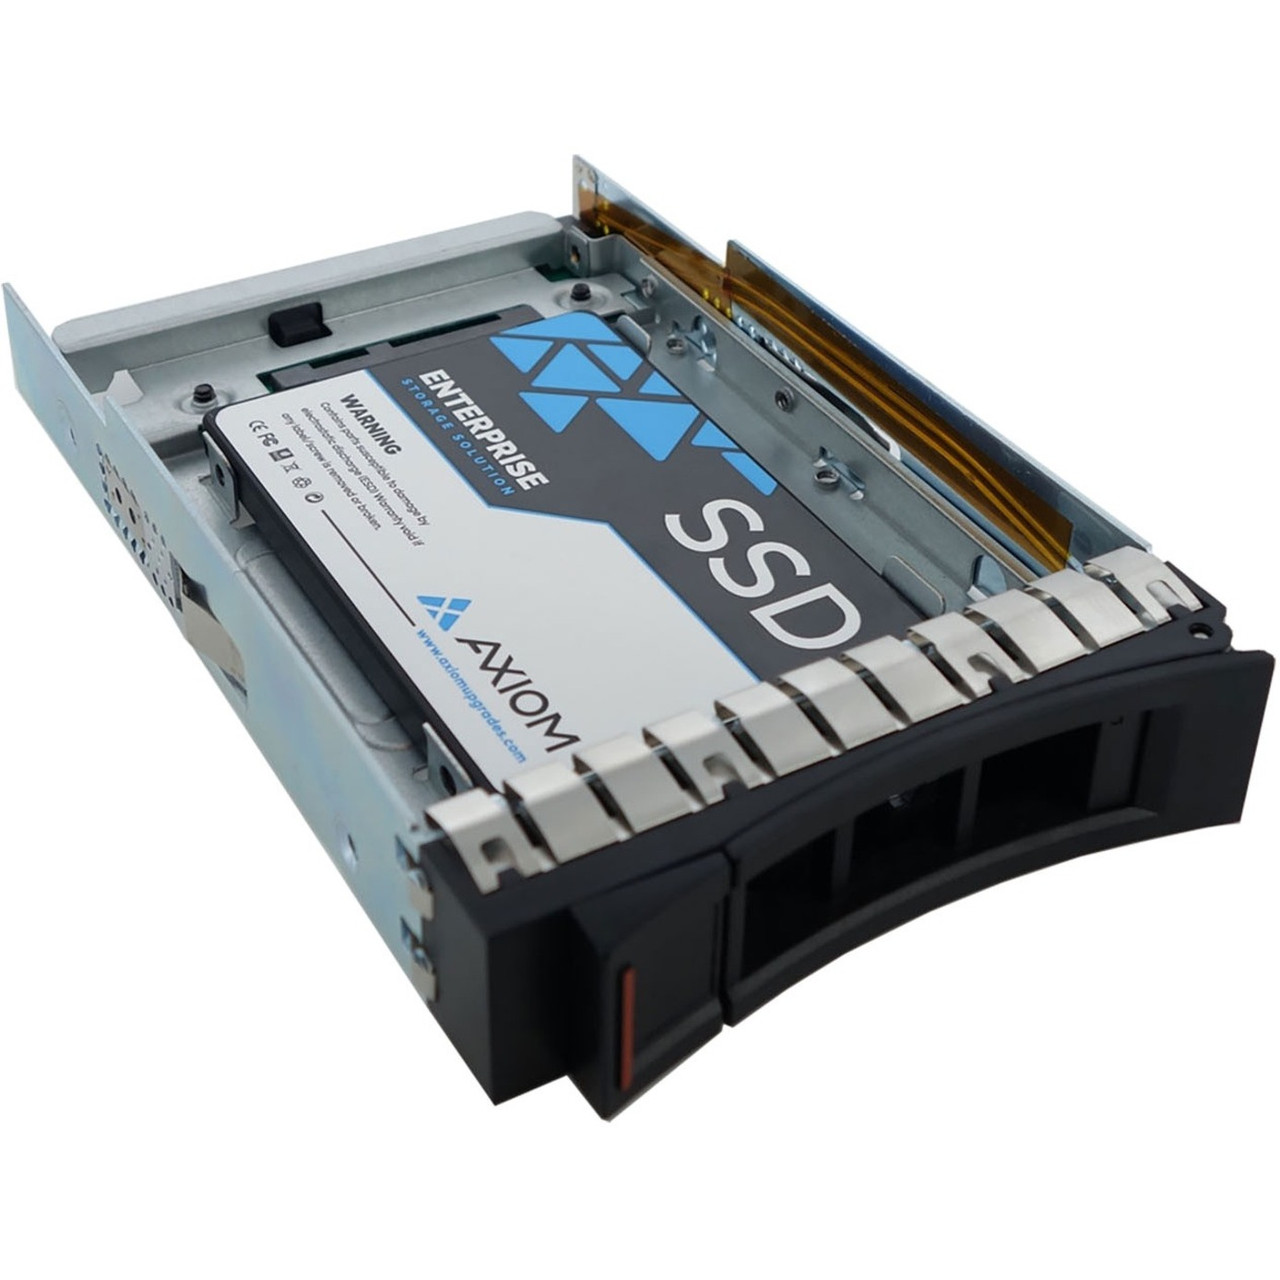 Axiom 1.92TB Enterprise Pro EP400 3.5-inch Hot-Swap SATA SSD for Lenovo